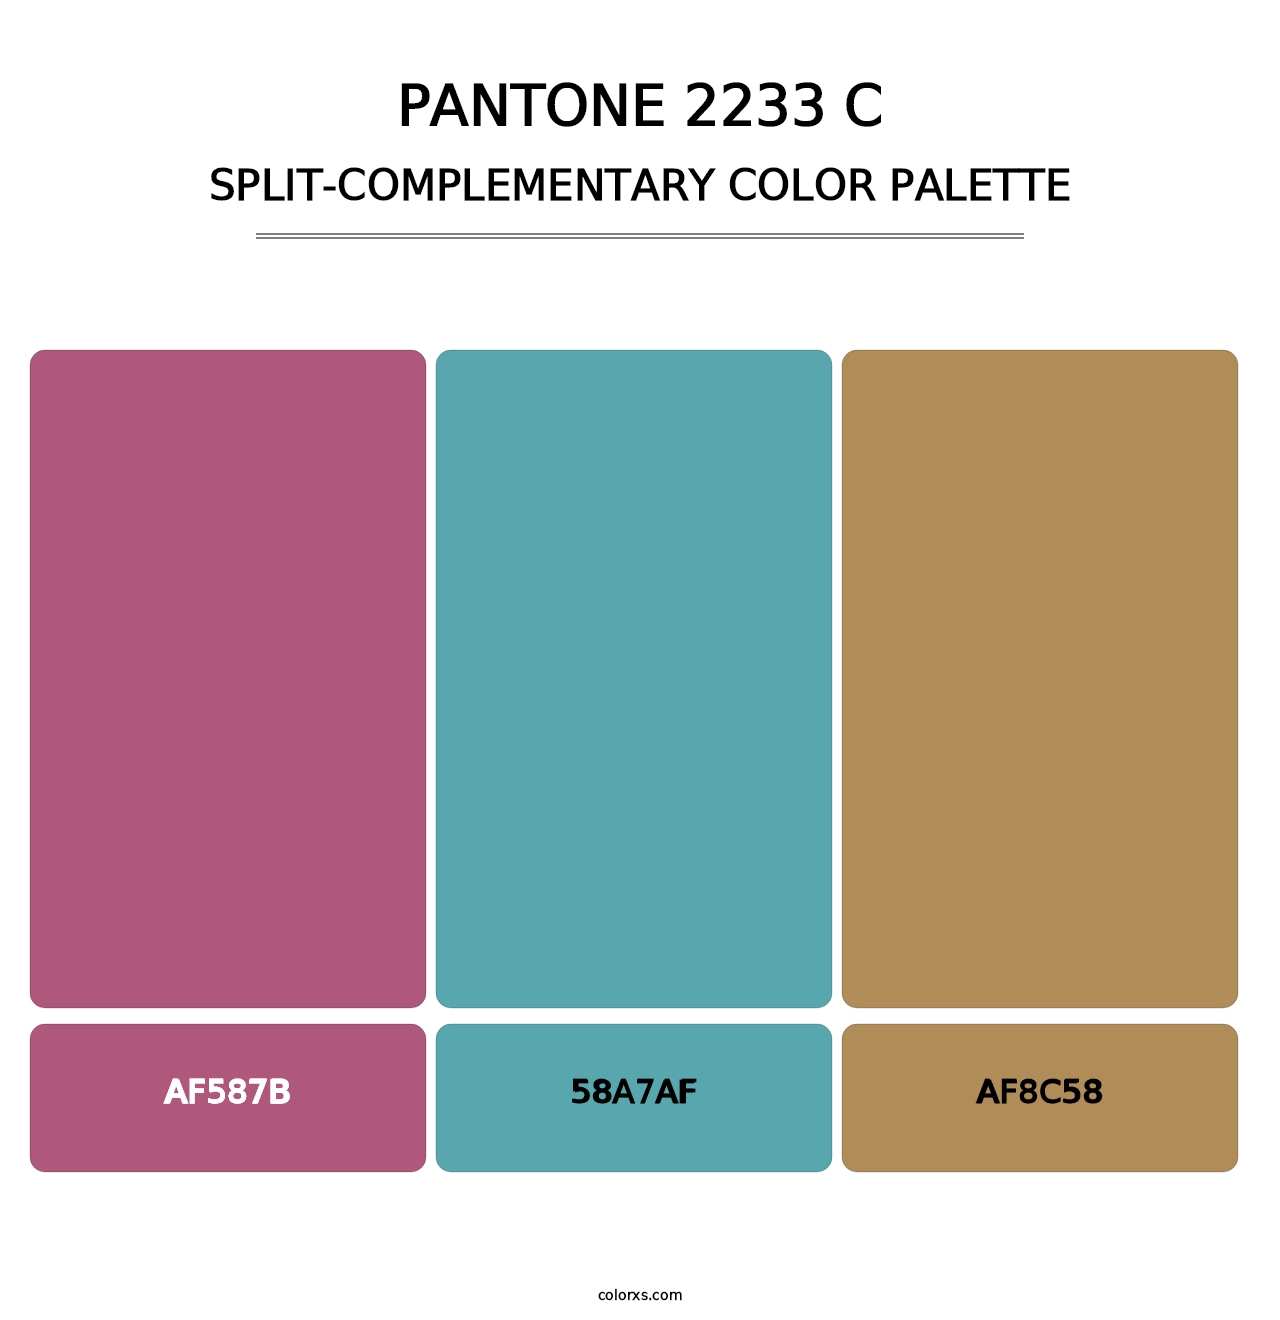 PANTONE 2233 C - Split-Complementary Color Palette